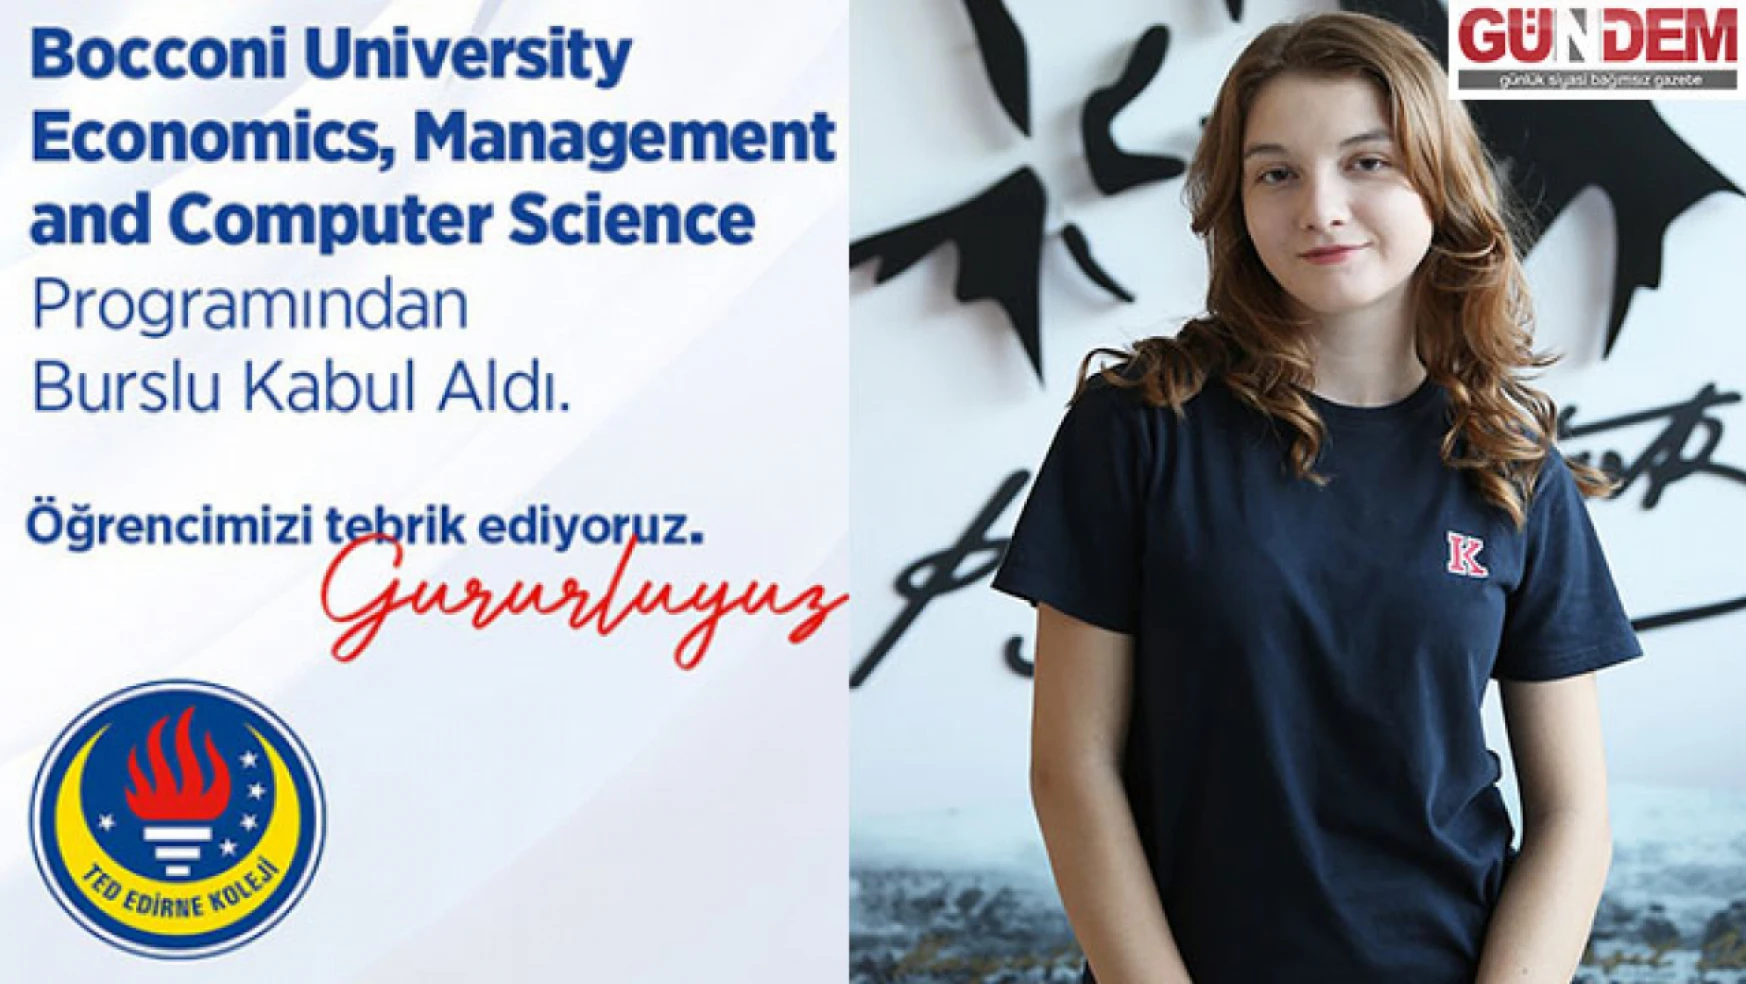 TED Edirne Koleji öğrencisi uluslararası prestijli üniversiteden burs hakkı kazandı